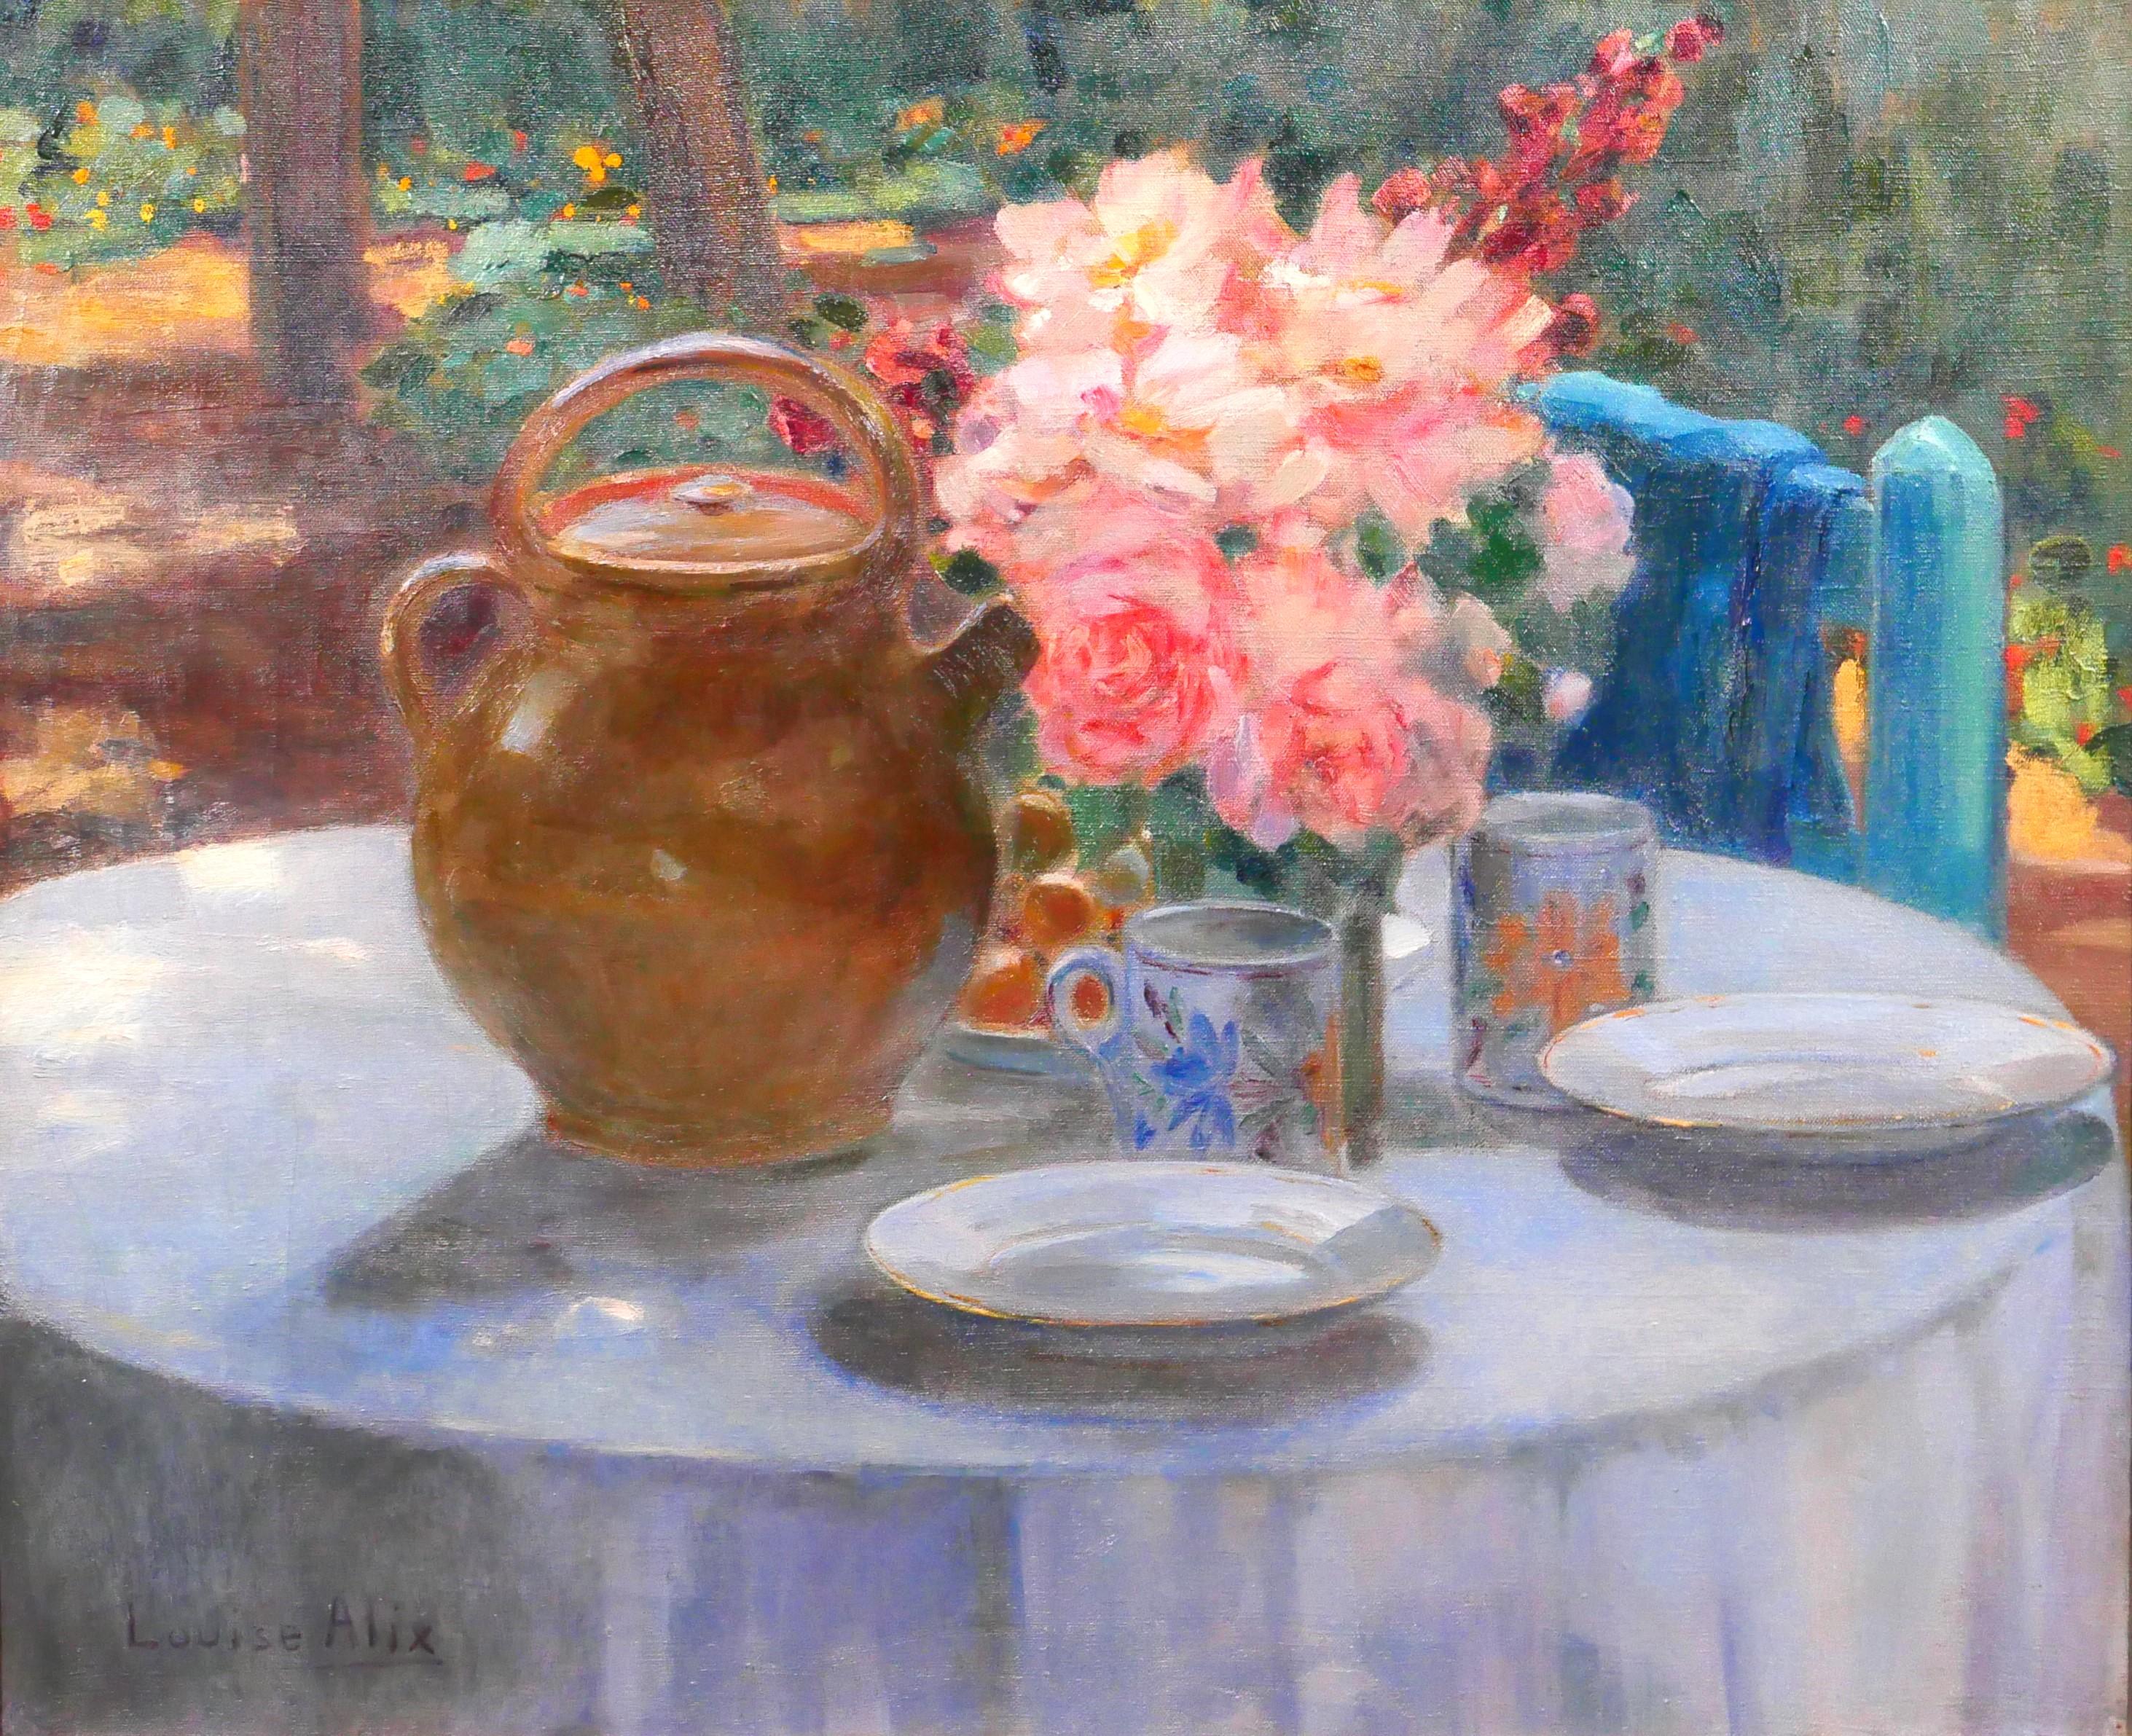 Still-Life Painting de Louise Alix - La mesa en el jardín, flores a la hora del té